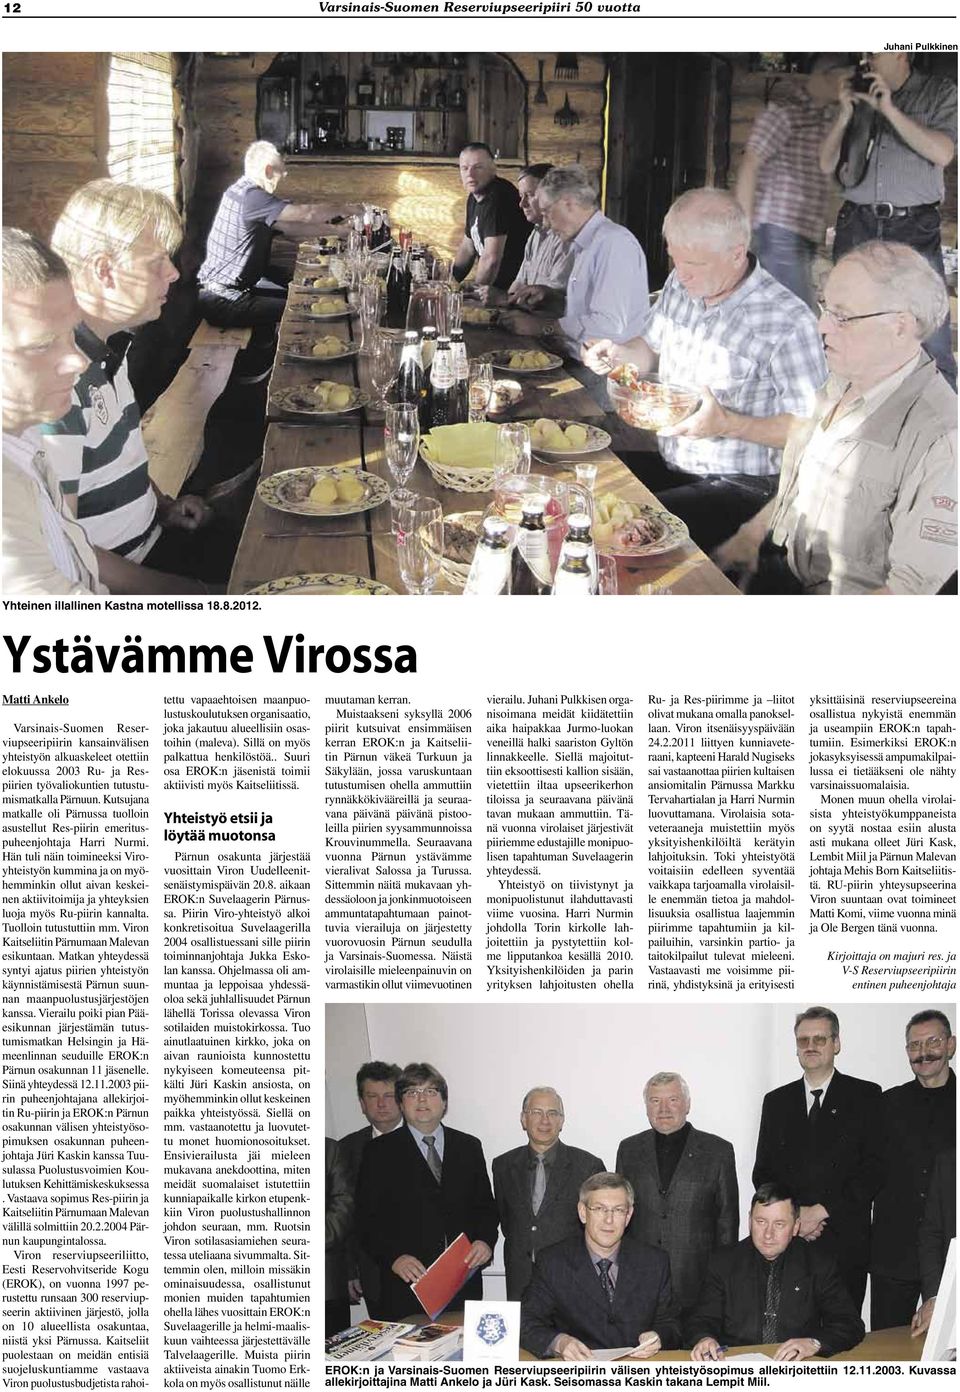 Kutsujana matkalle oli Pärnussa tuolloin asustellut Res-piirin emerituspuheenjohtaja Harri Nurmi.